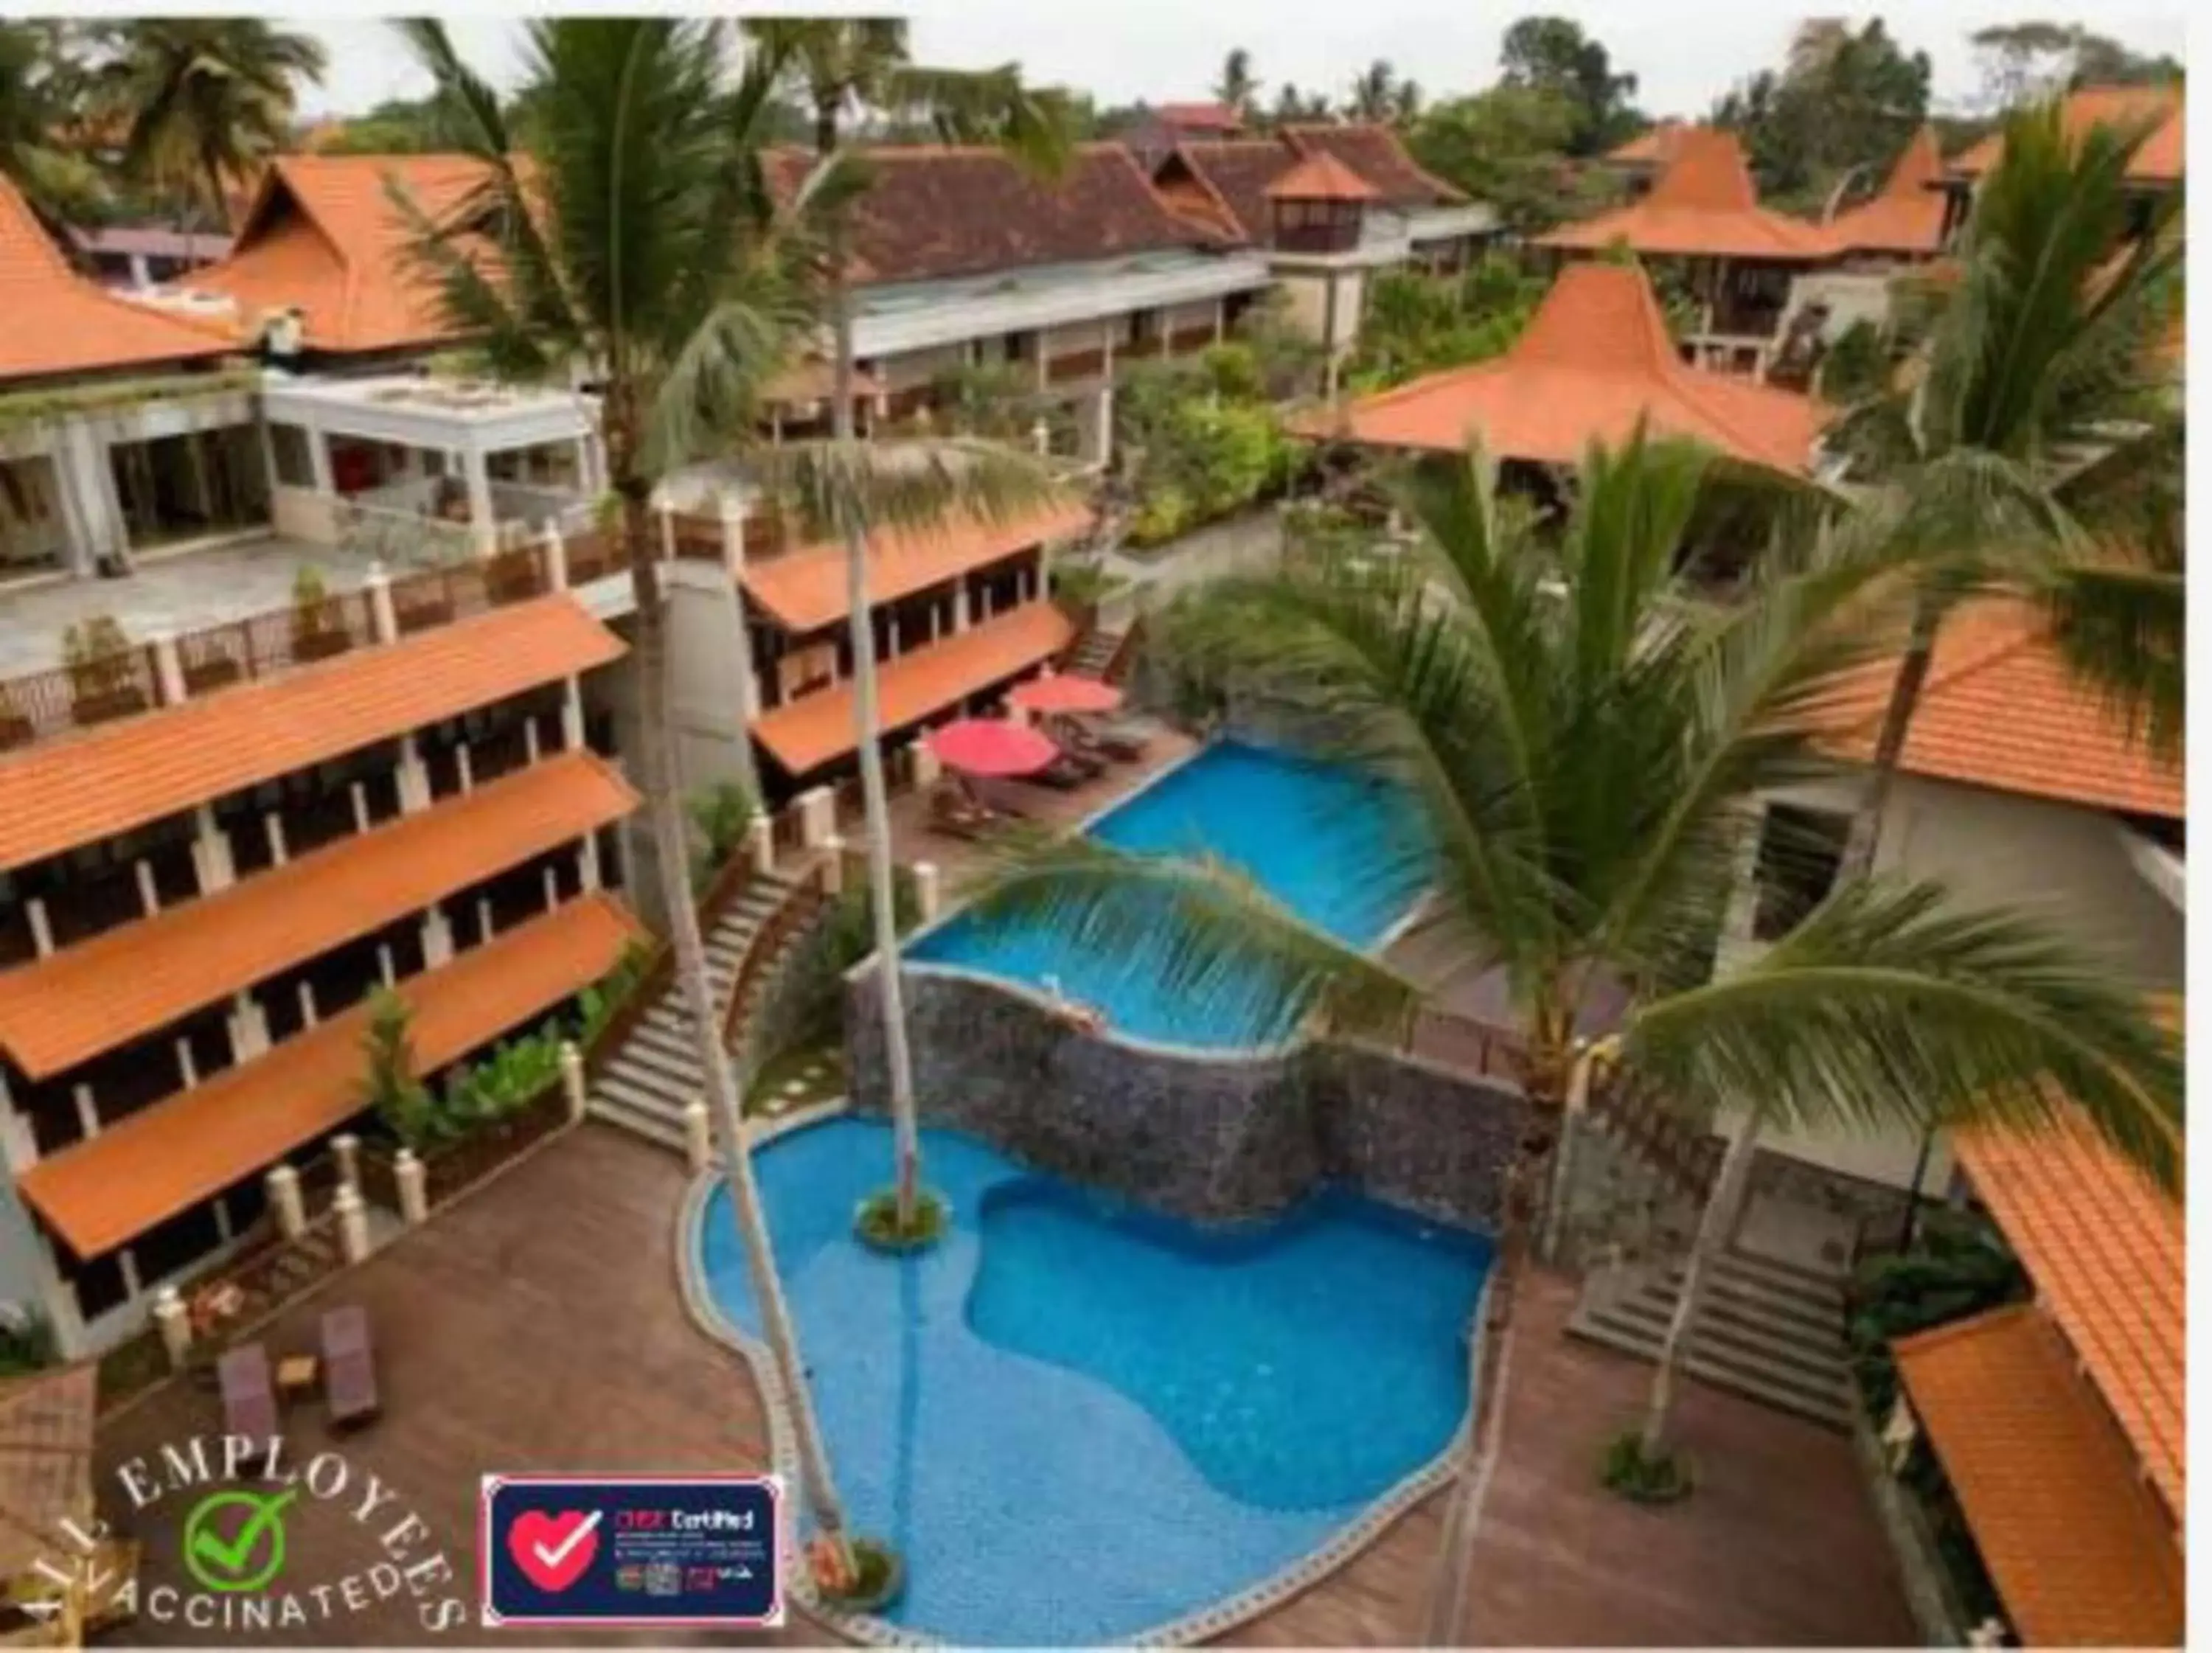 Property building, Pool View in Best Western Premier Agung Resort Ubud